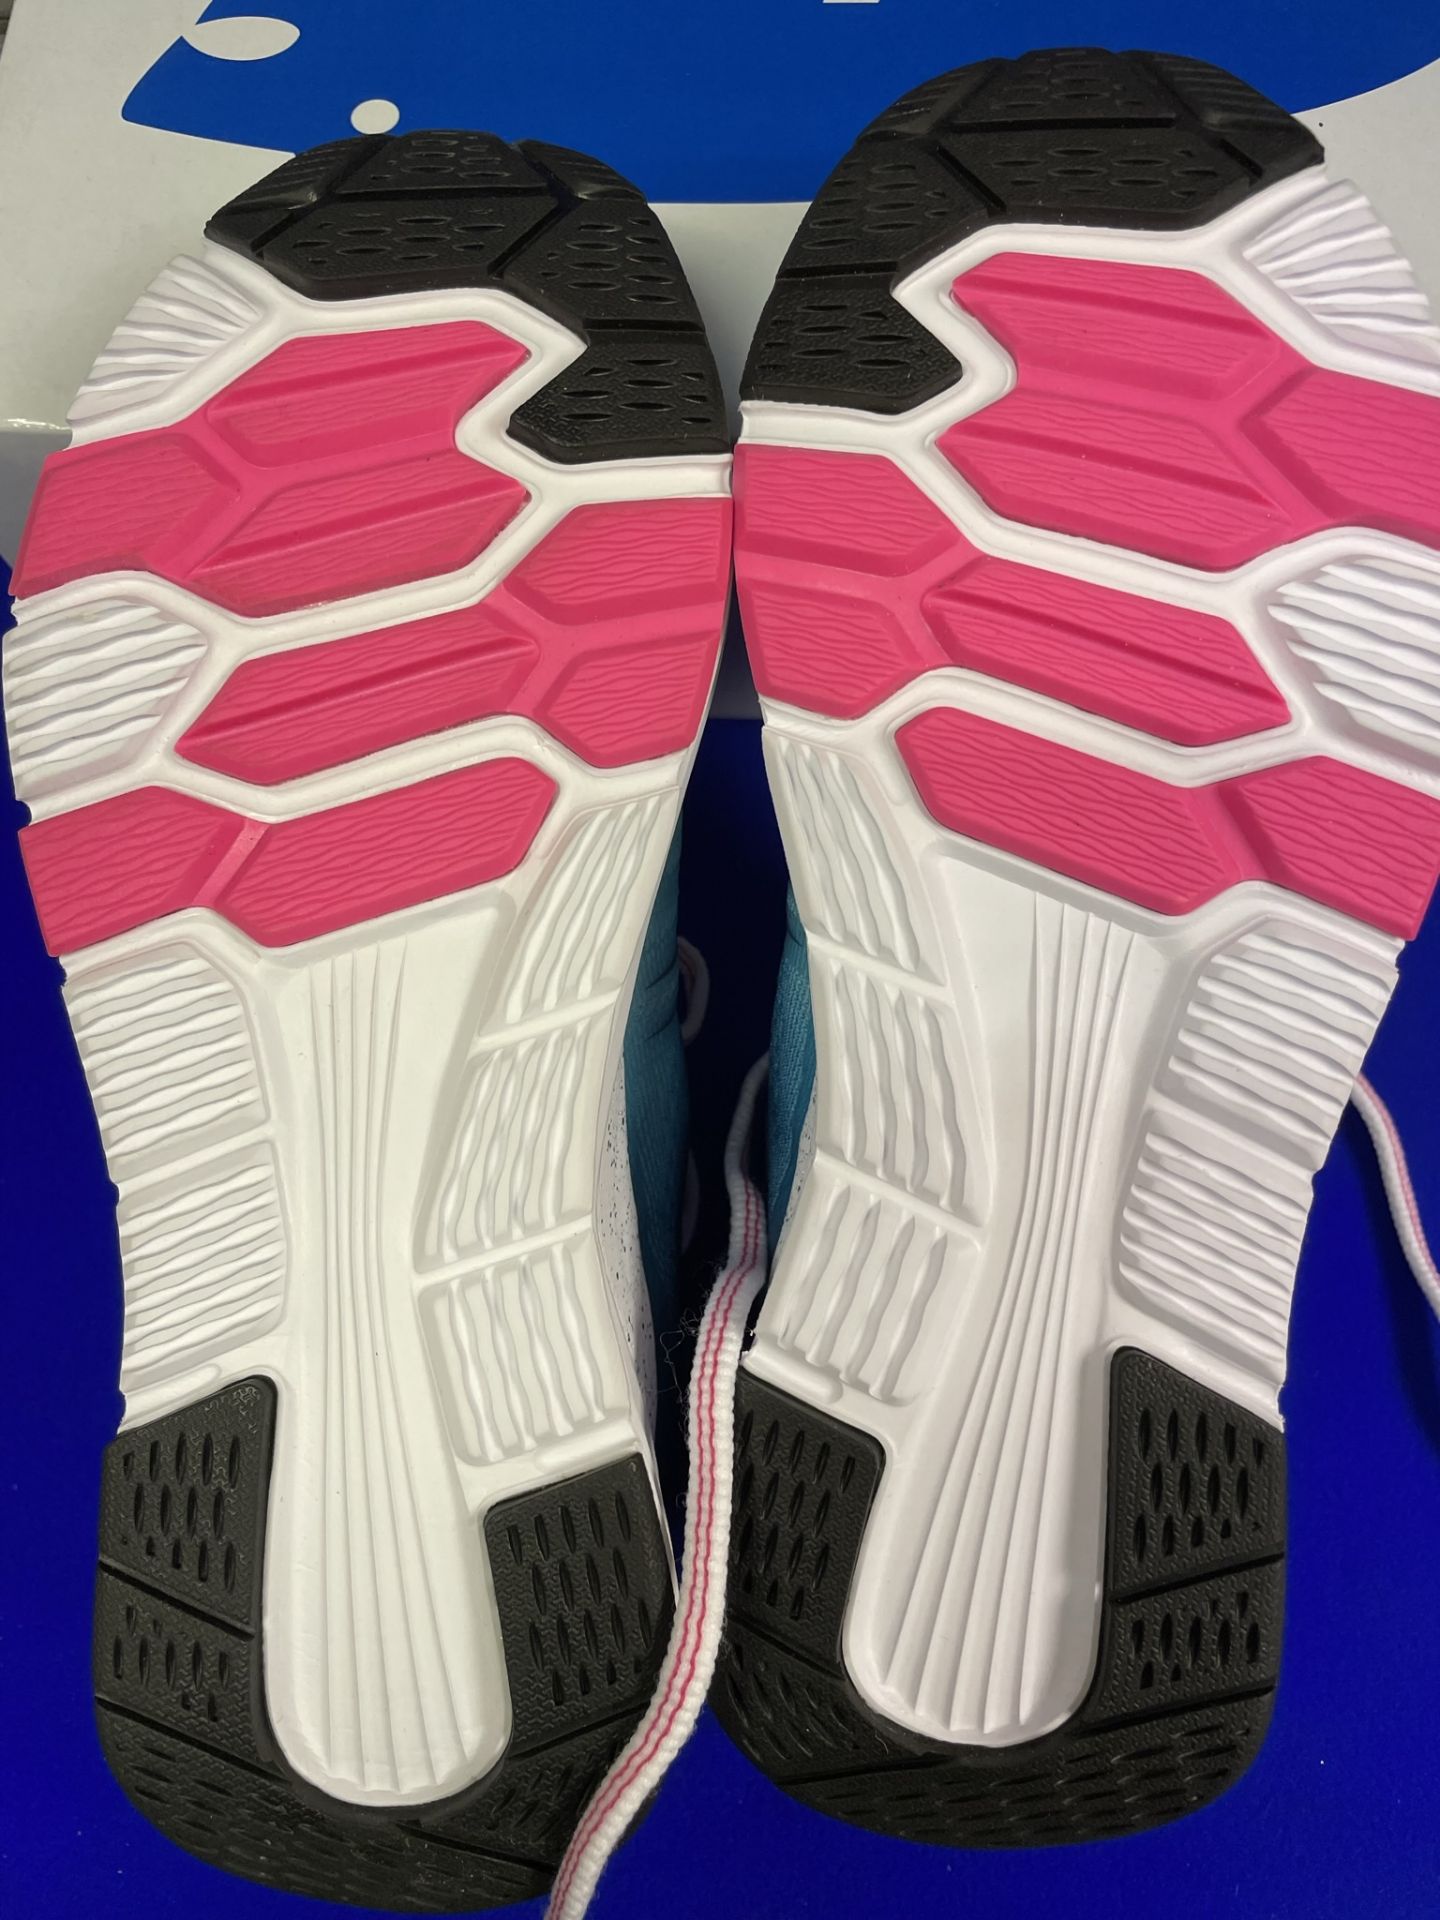 Karhu Fusion Ortix Running Shoes | UK 4 - Image 4 of 5